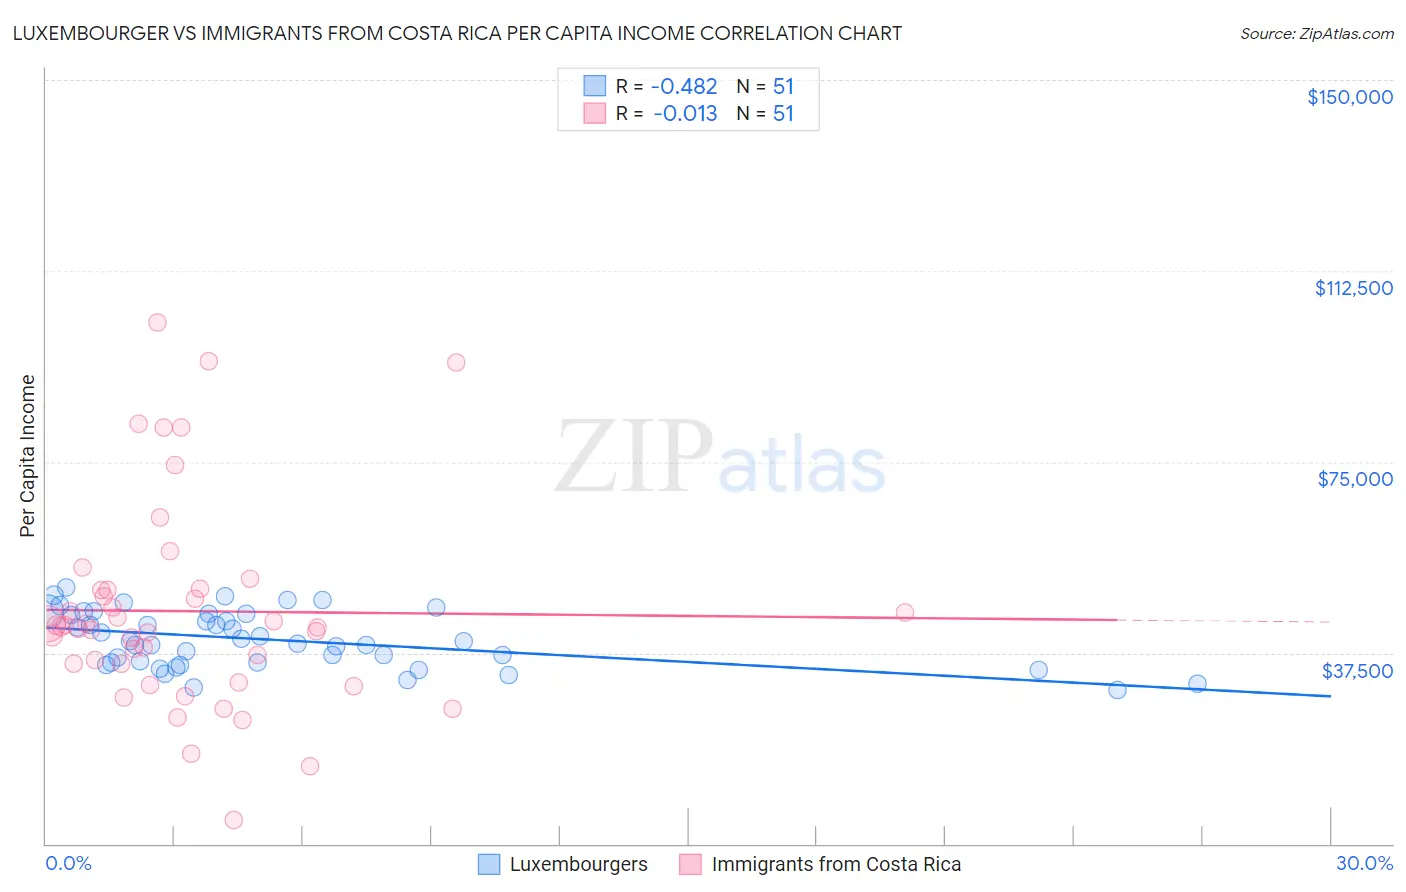 Luxembourger vs Immigrants from Costa Rica Per Capita Income